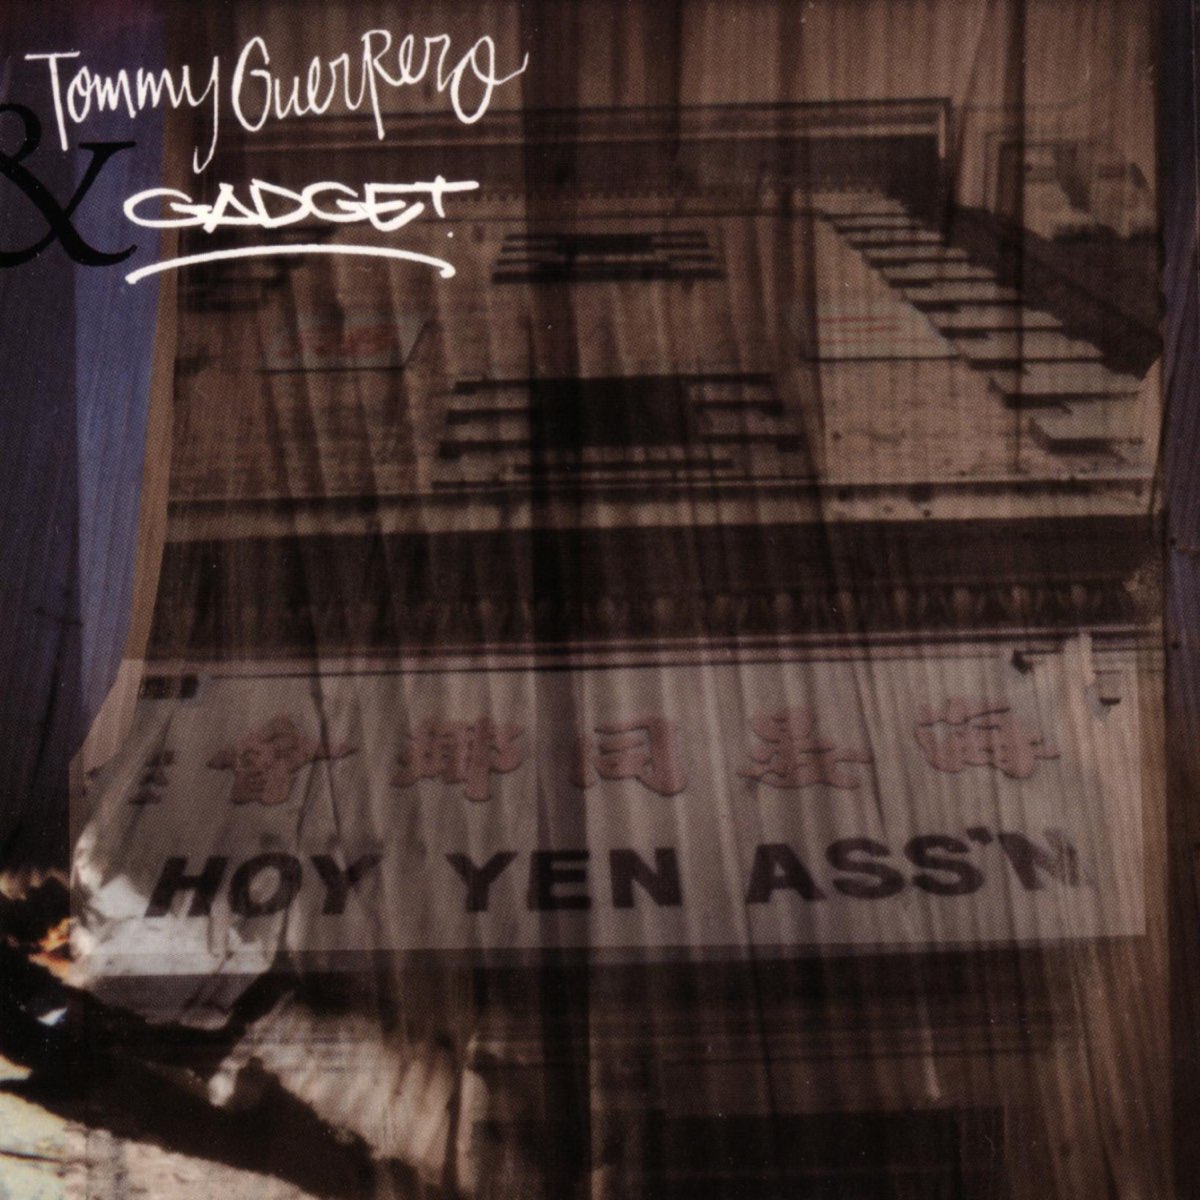 Hoy Yen Ass'n - Album by Gadget & Tommy Guerrero - Apple Music